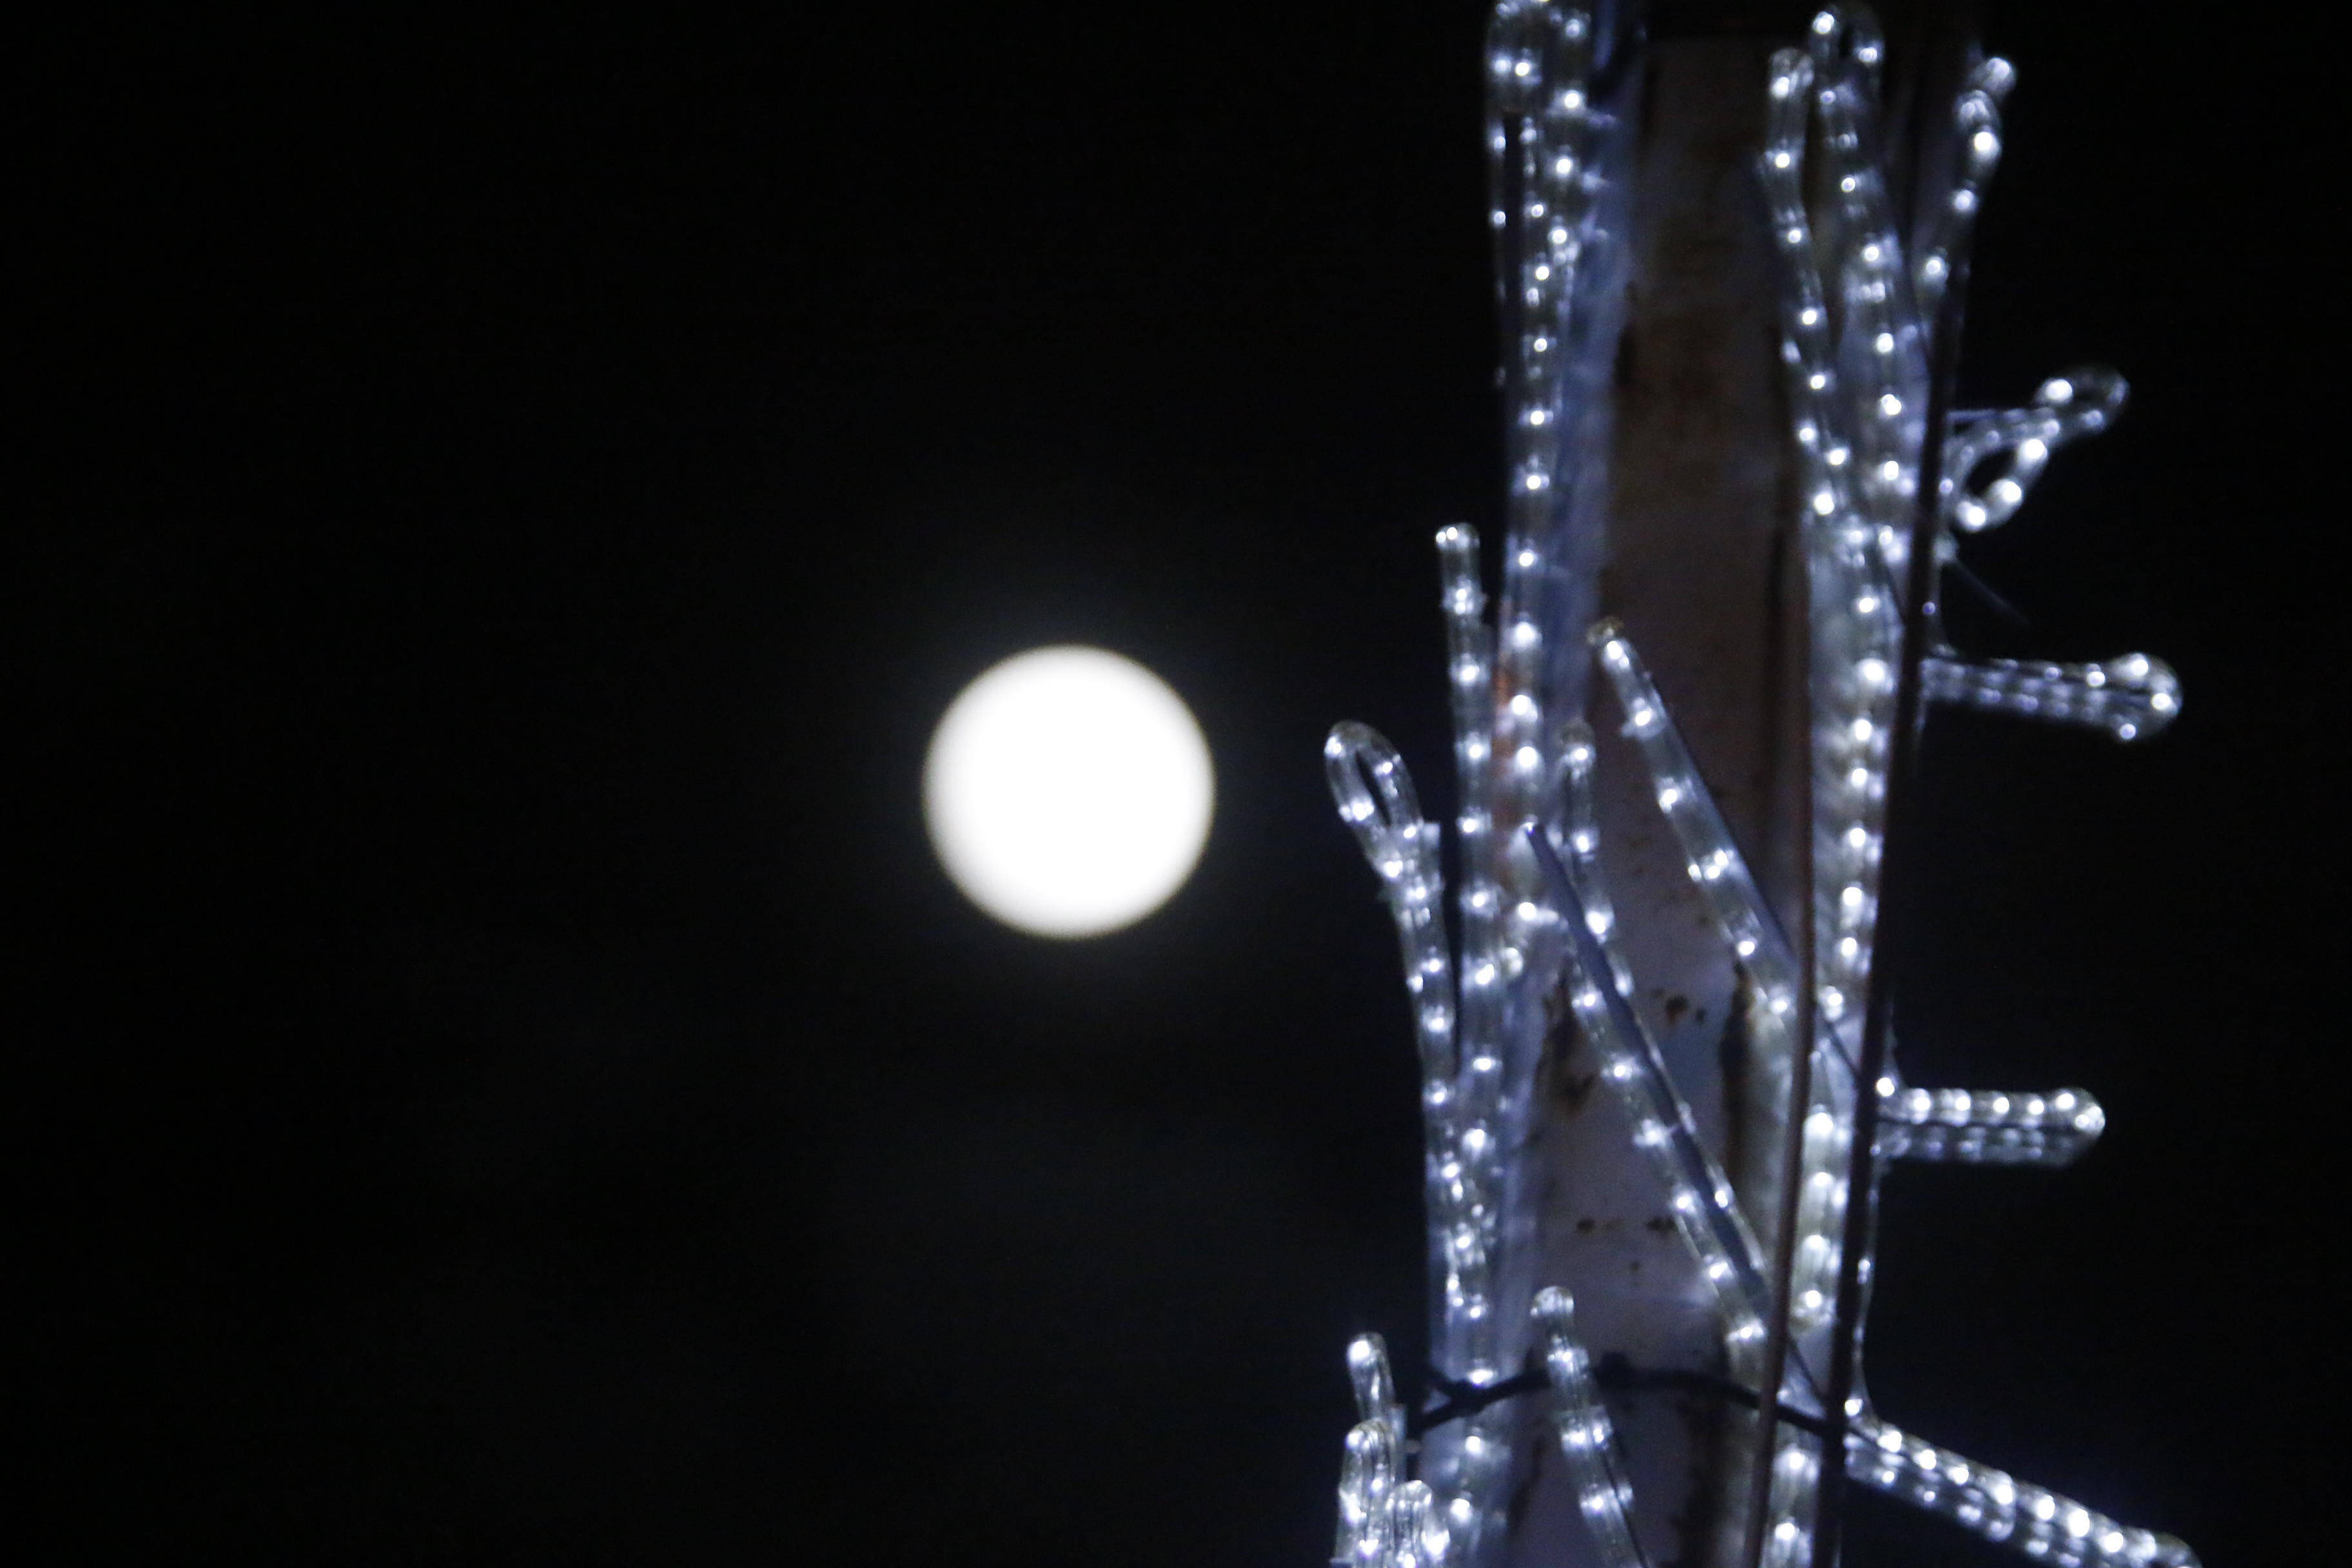 Πανέμορφη σελήνη και υπέροχες φωτογραφίες #πανσεληνος